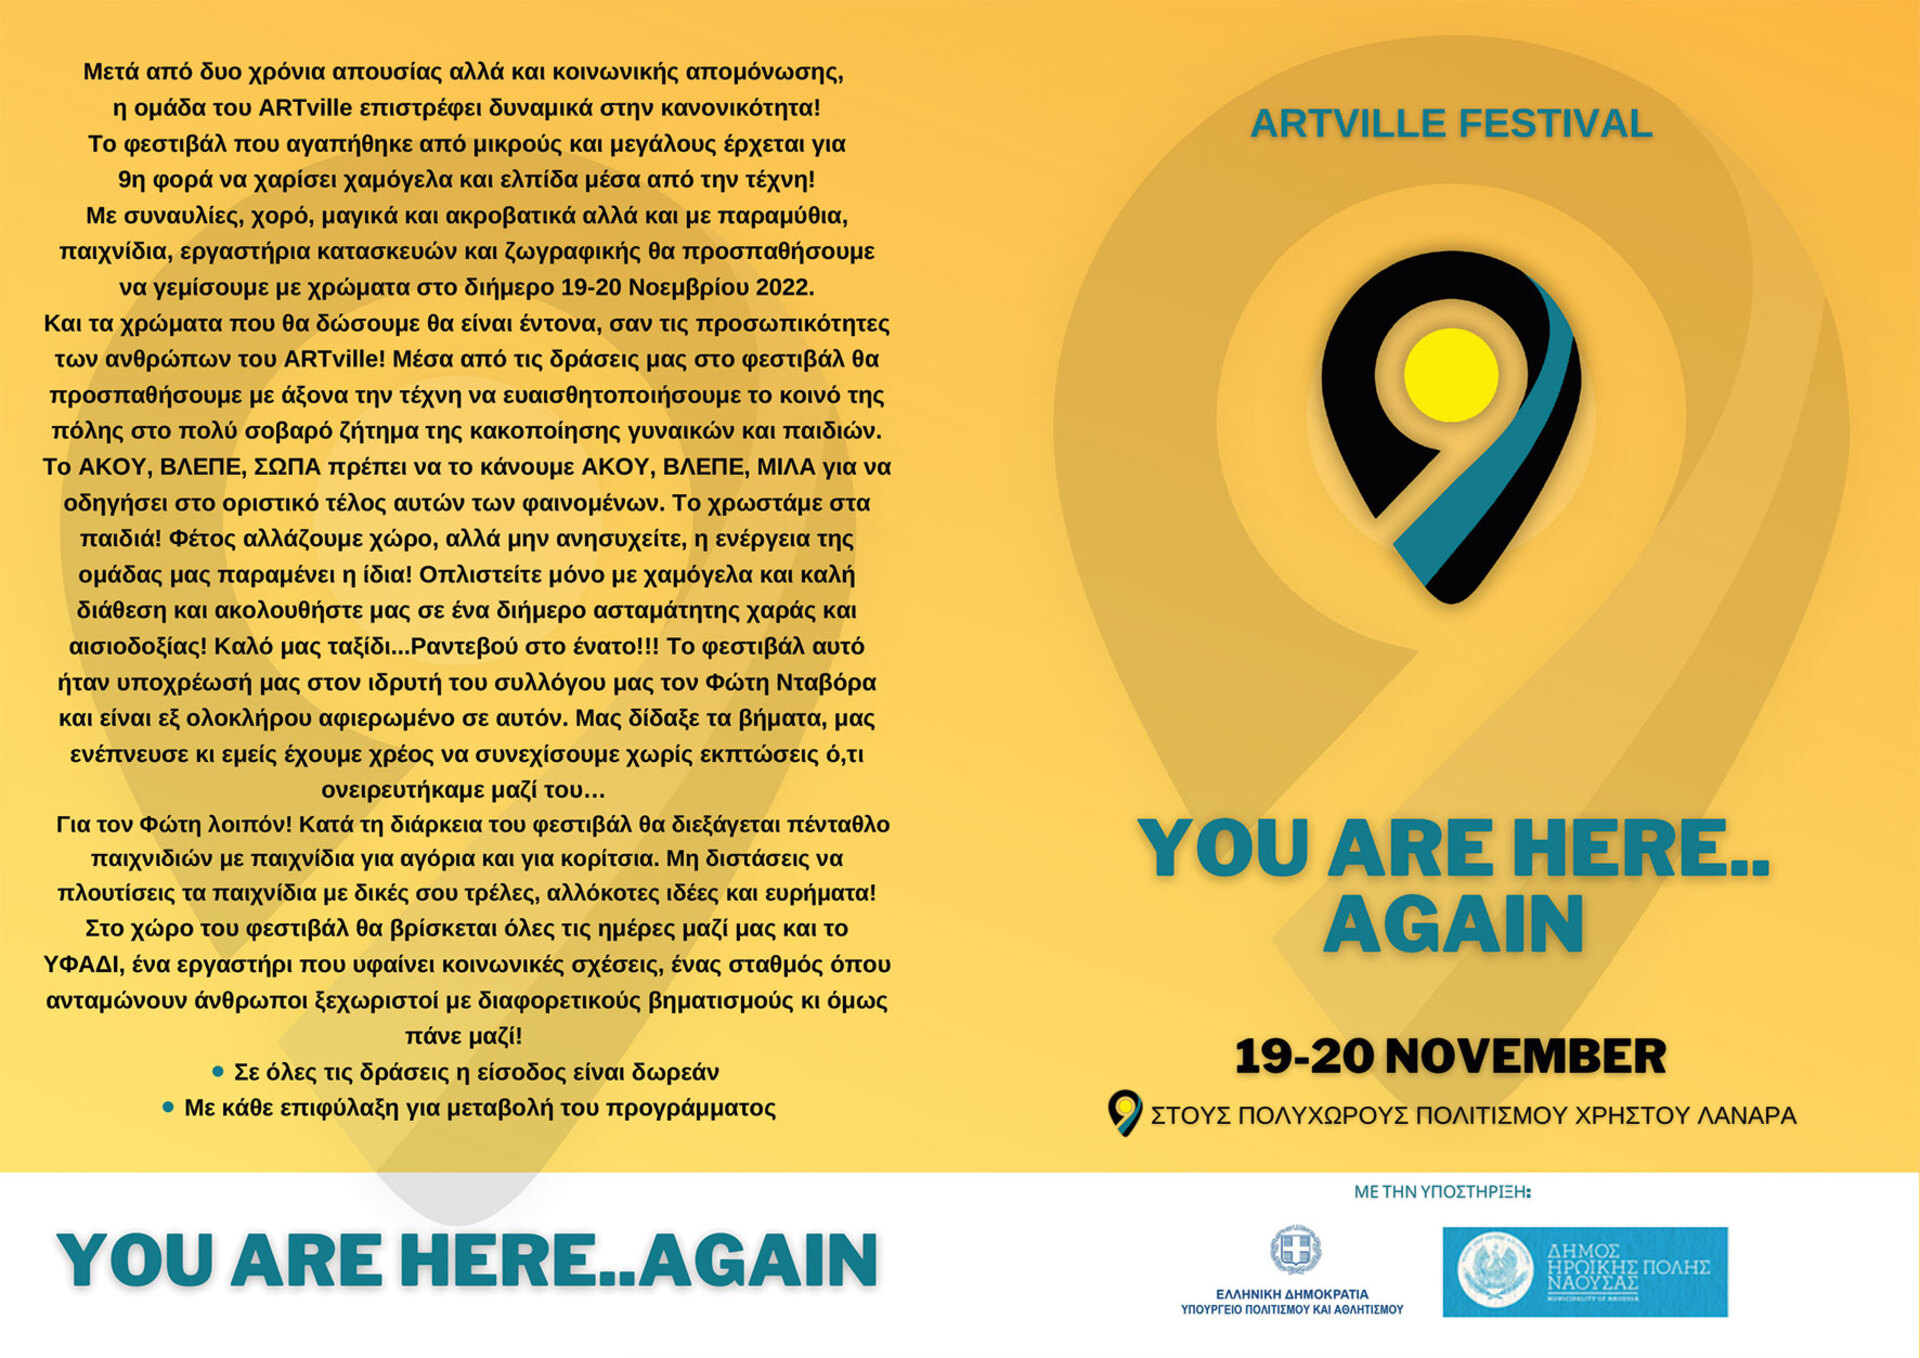 Ξεκινάει το 9ο Φεστιβάλ ARTville  αφιερωμένο στο Φώτη Νταβόρα 